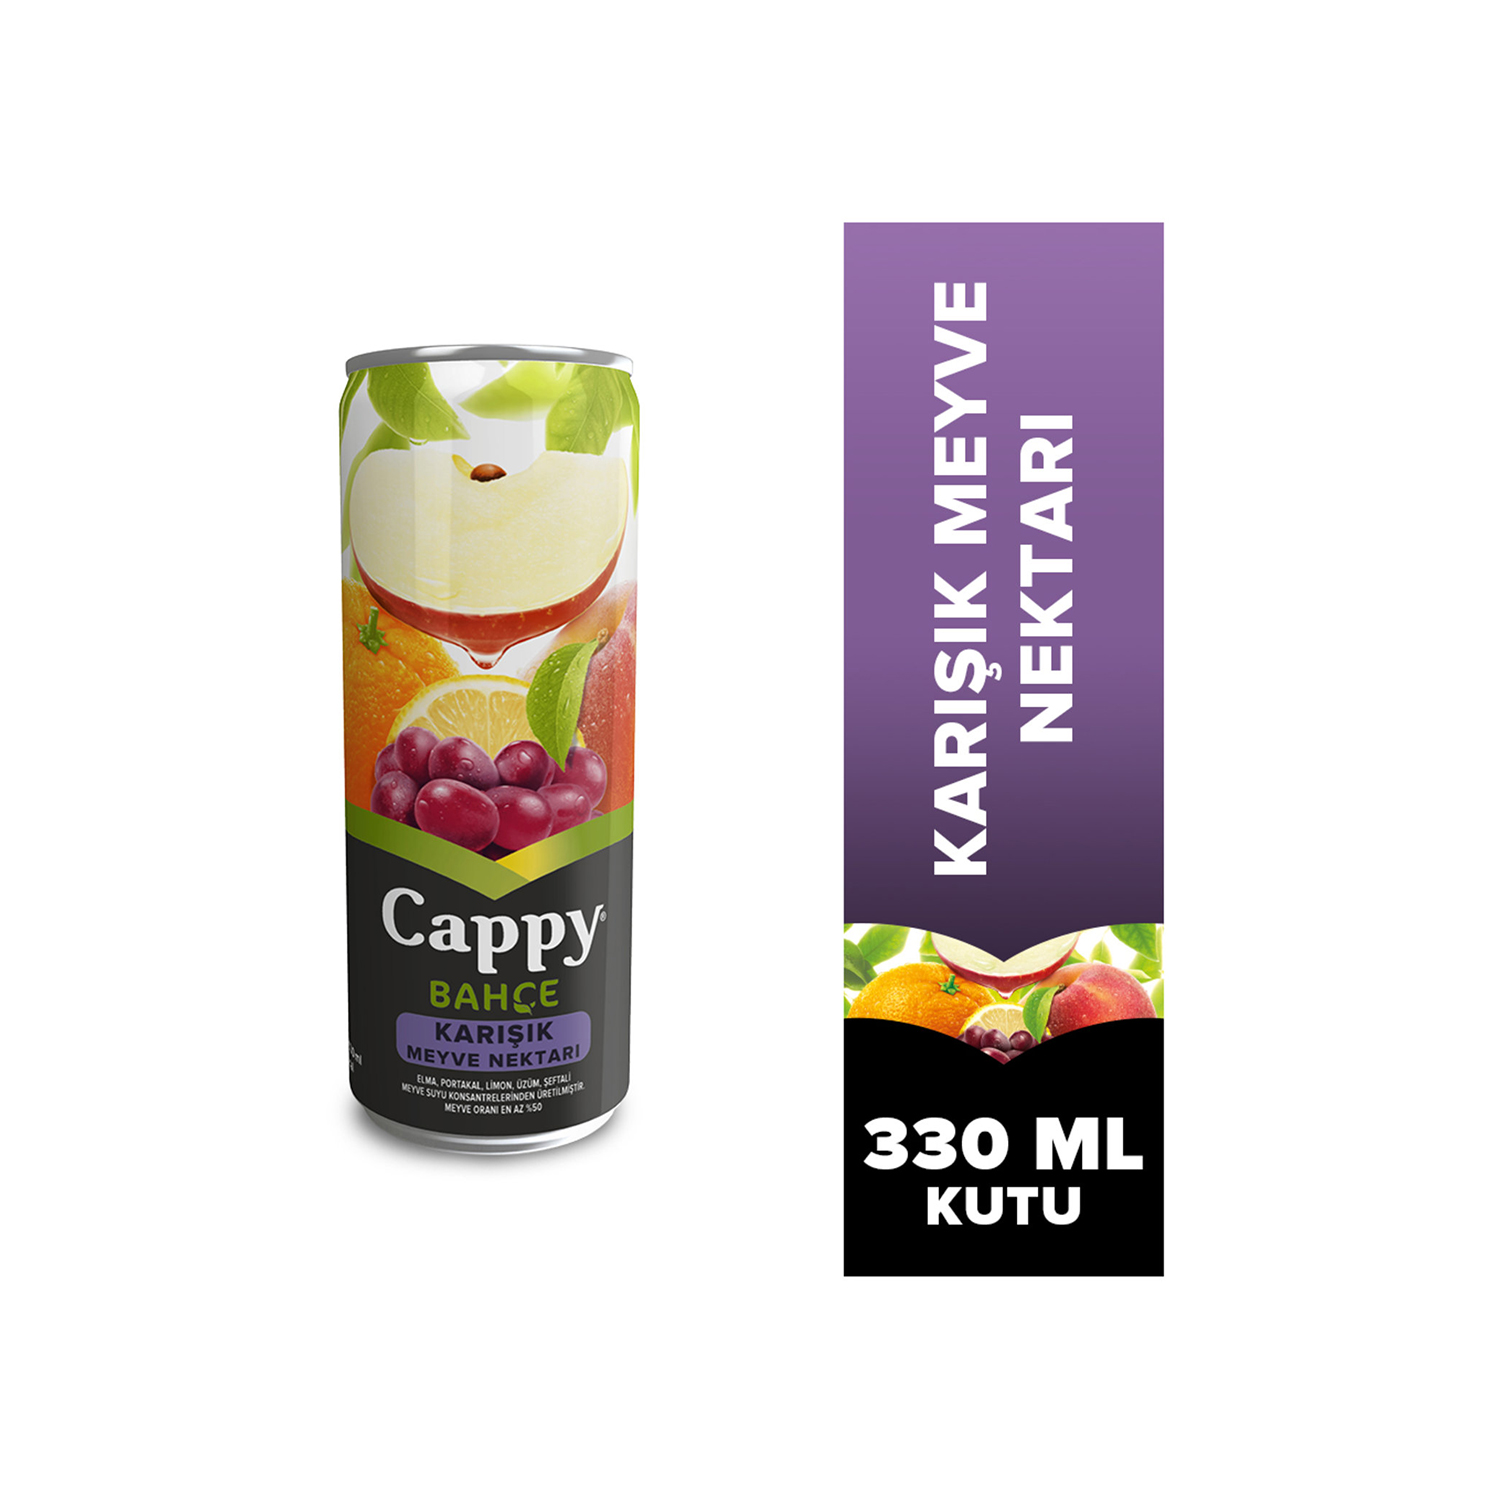 Cappy Bahçe Karışık Meyve Nektarı 330 Ml